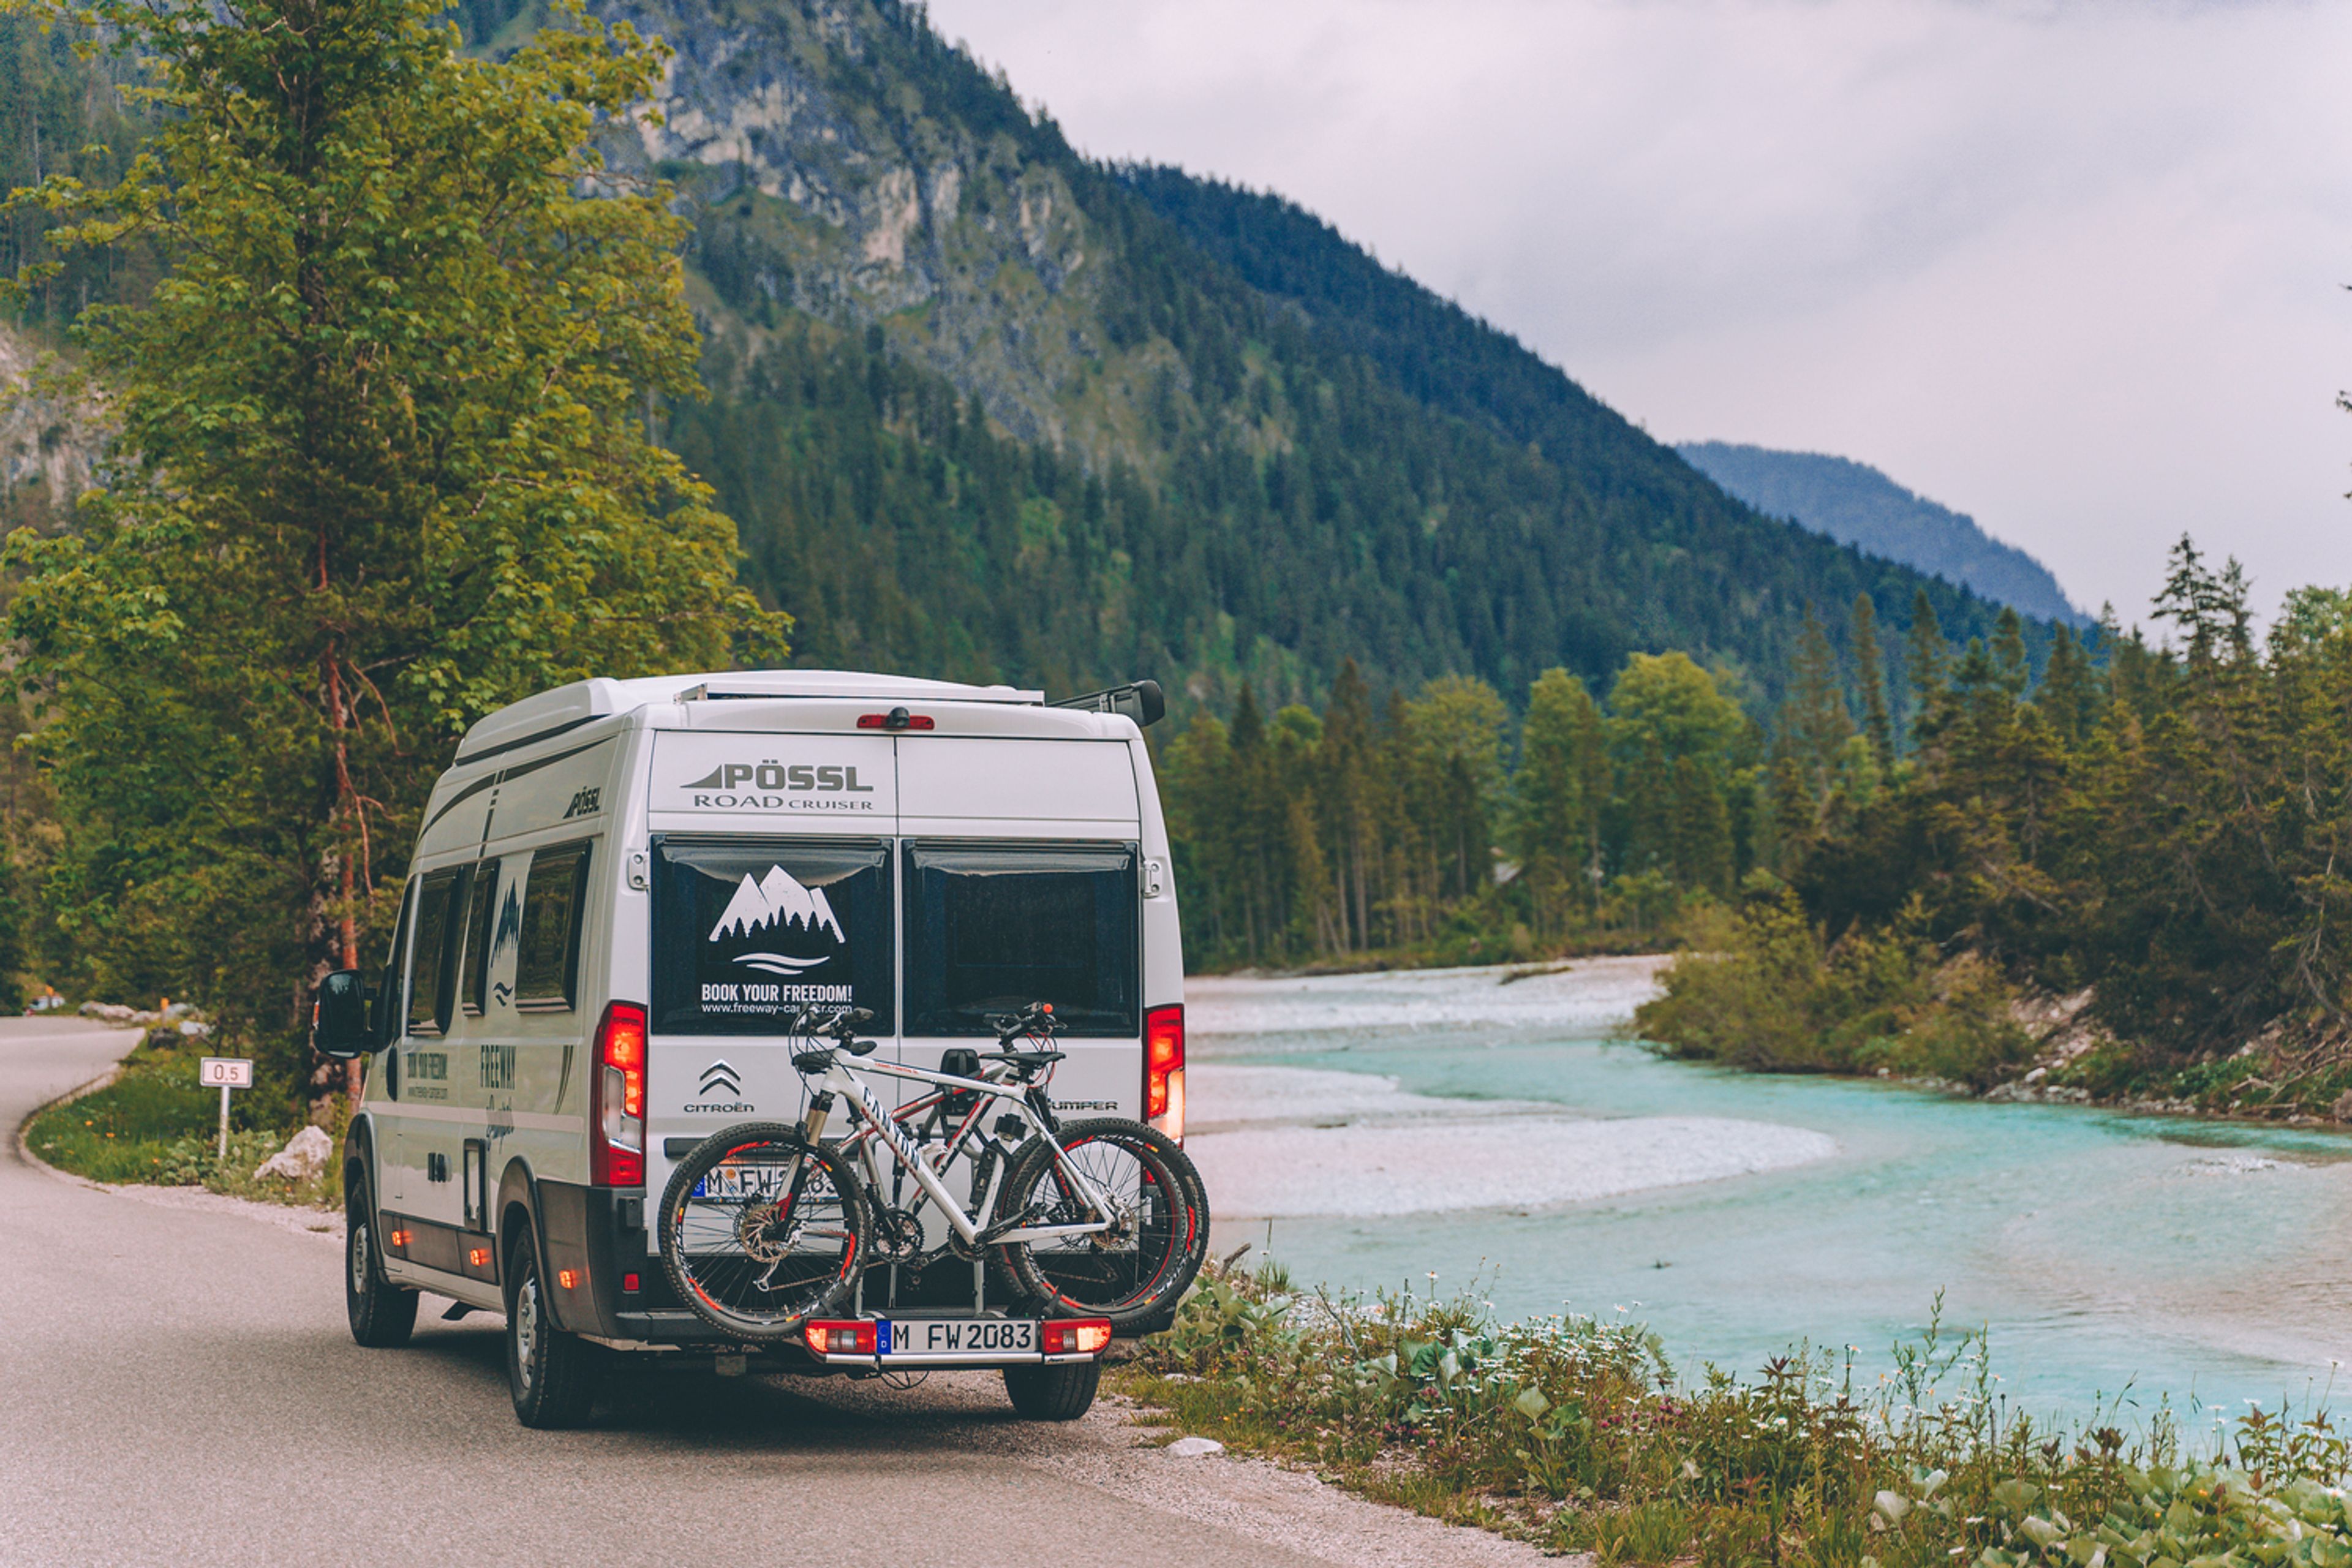 Campervan 640 il Confortevole con portabici vicino a un lago in montagna in Slovenia